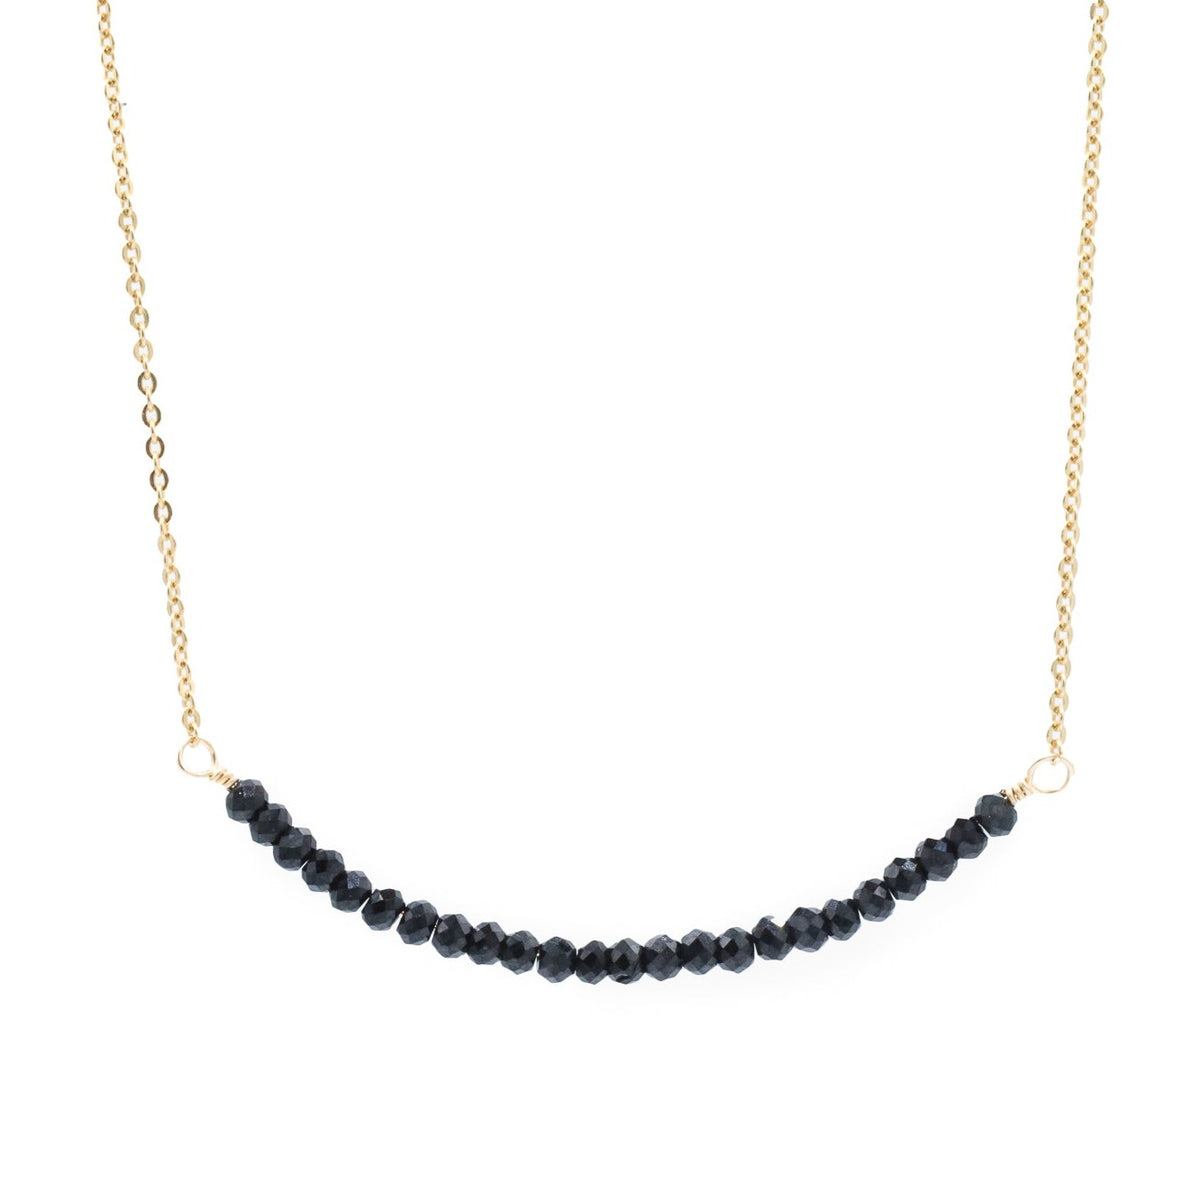 Black spinel bar necklace - 14K gold fill